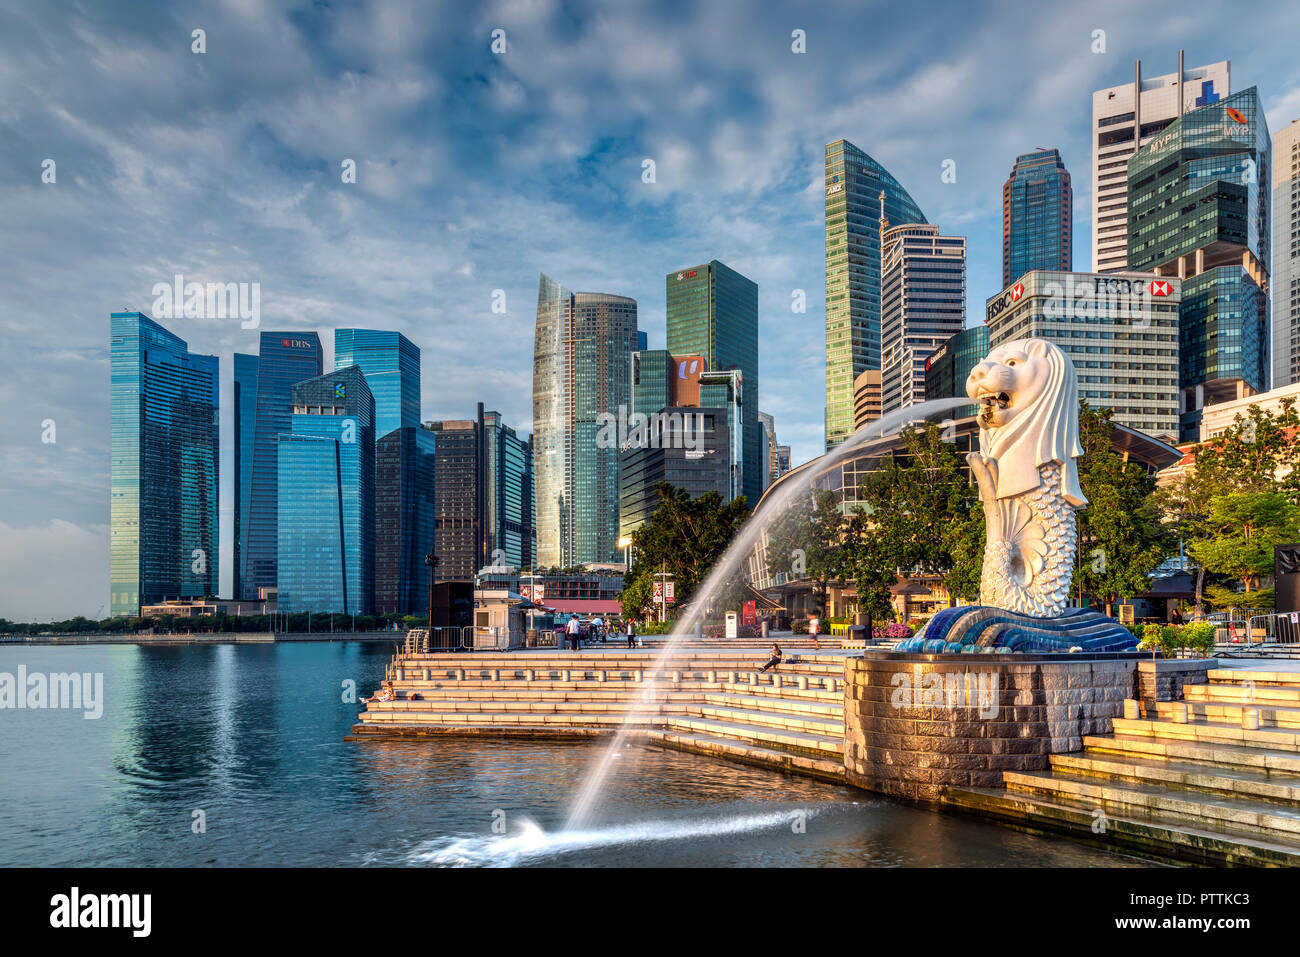 Der Merlion Statue mit Sicht auf die City Skyline im Hintergrund, Marina Bay, Singapore Stockfoto